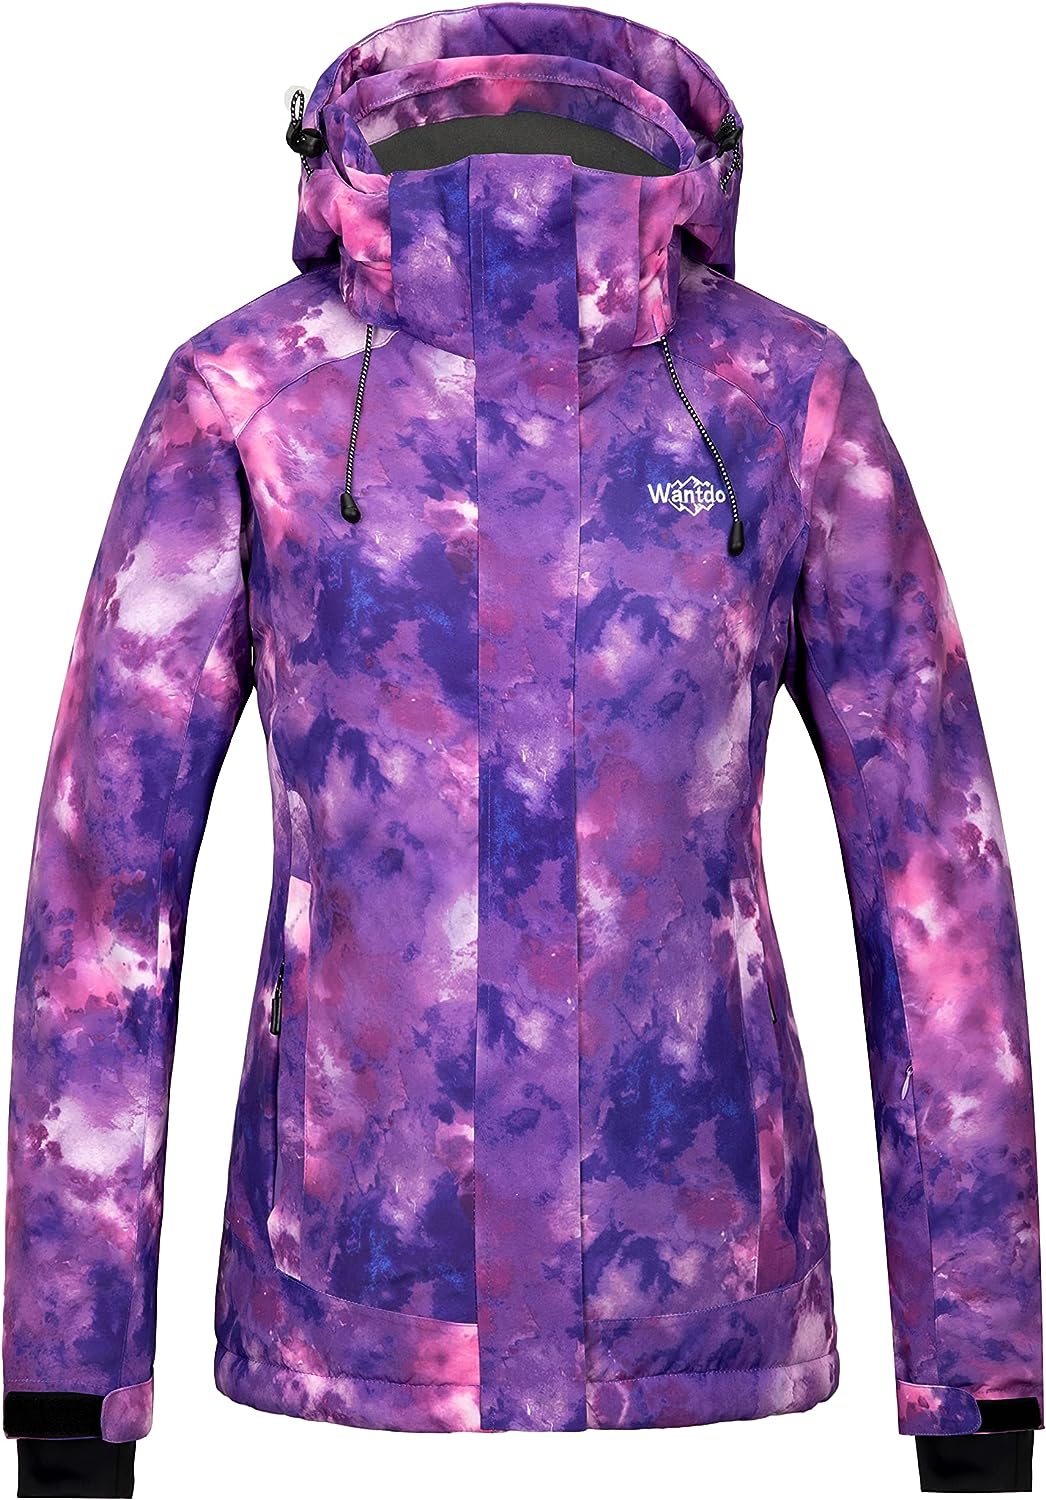 Wantdo Women's Waterproof Ski Jacket Colorful Printed [...]